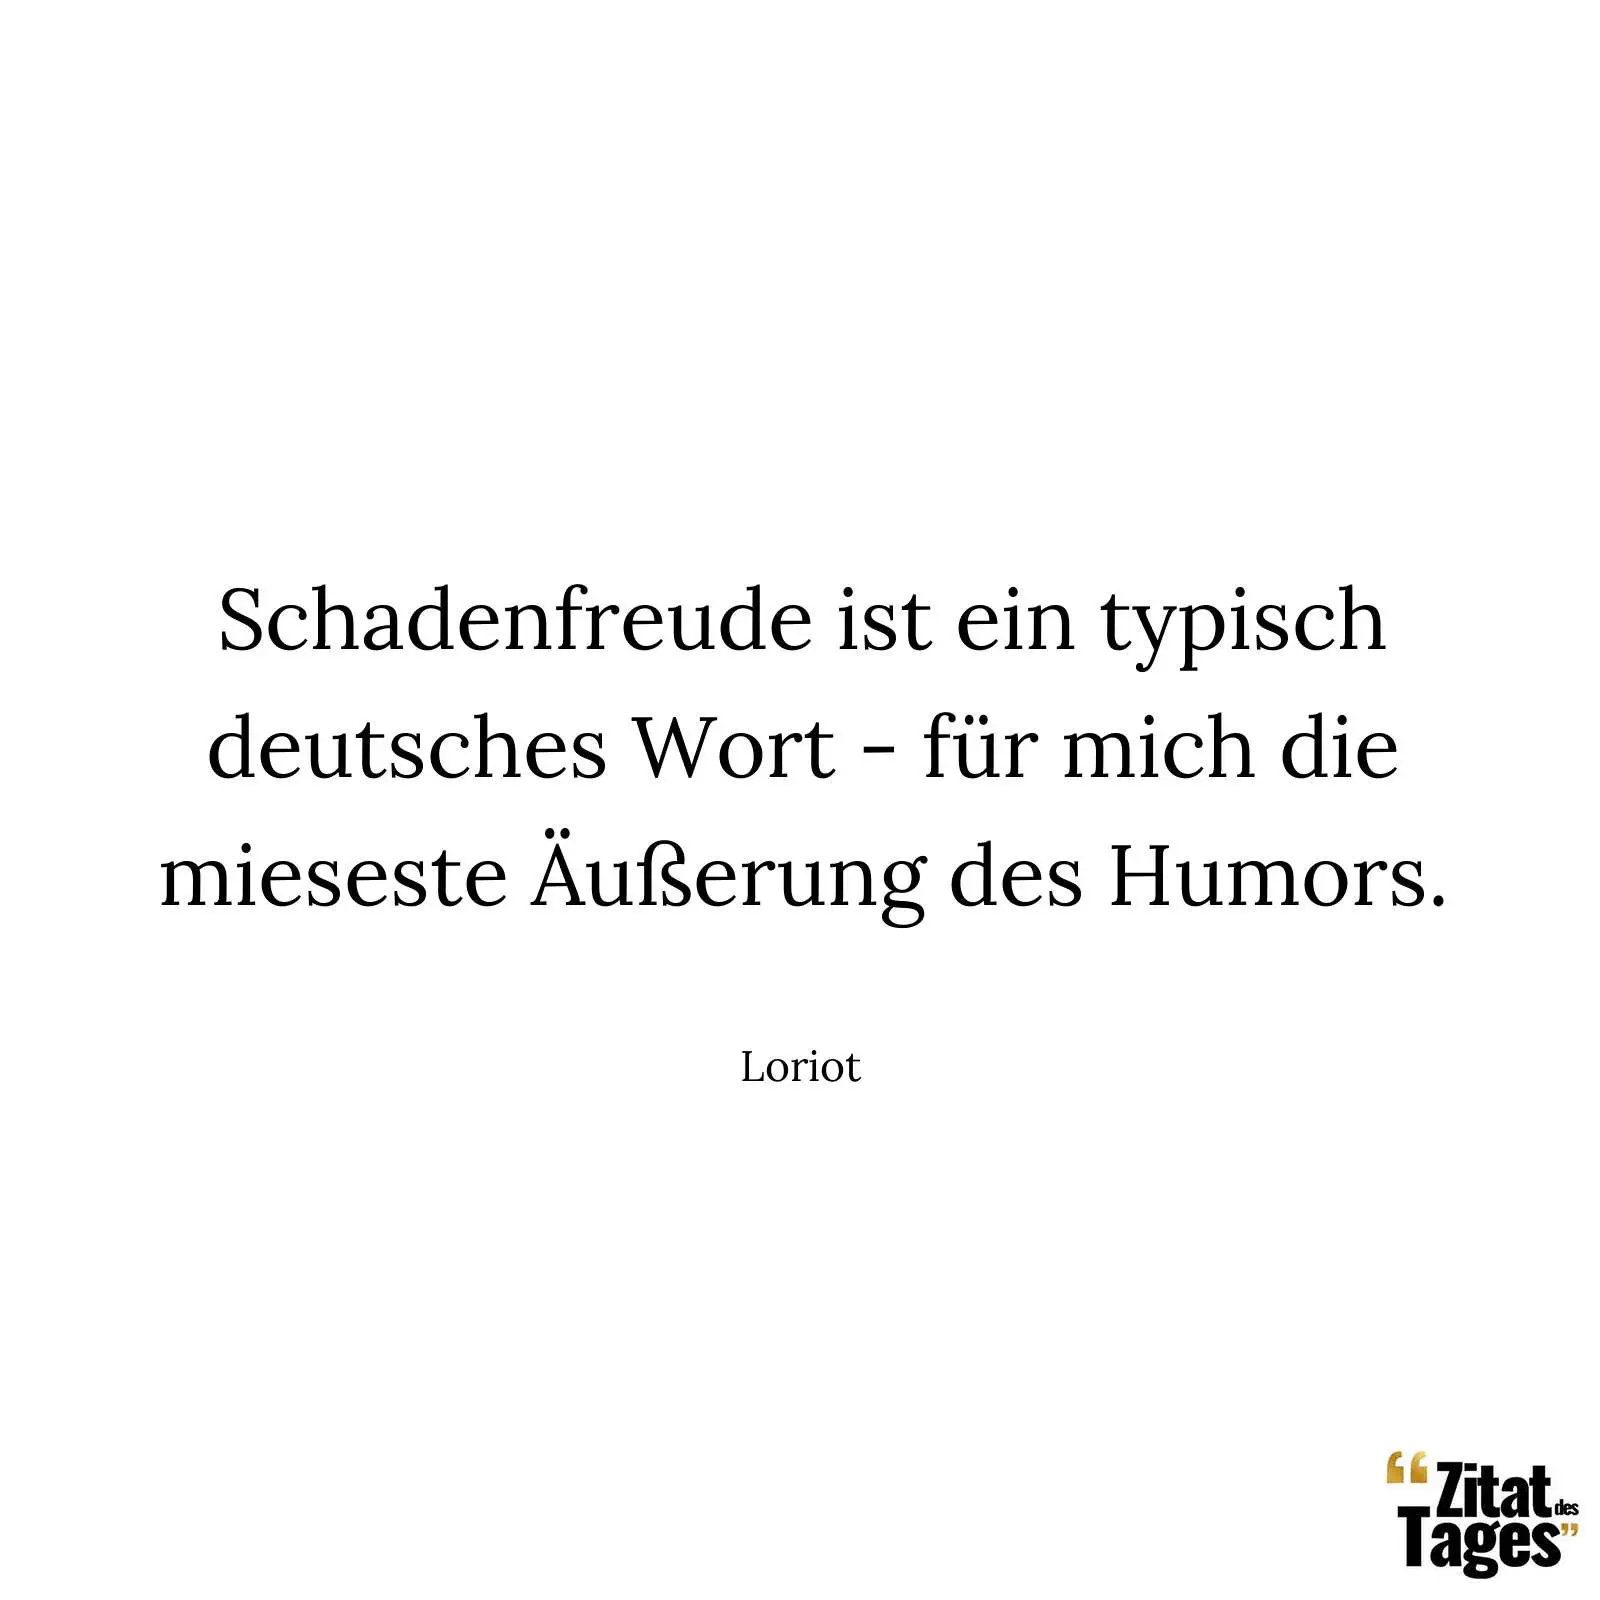 Schadenfreude ist ein typisch deutsches Wort - für mich die mieseste Äußerung des Humors. - Loriot